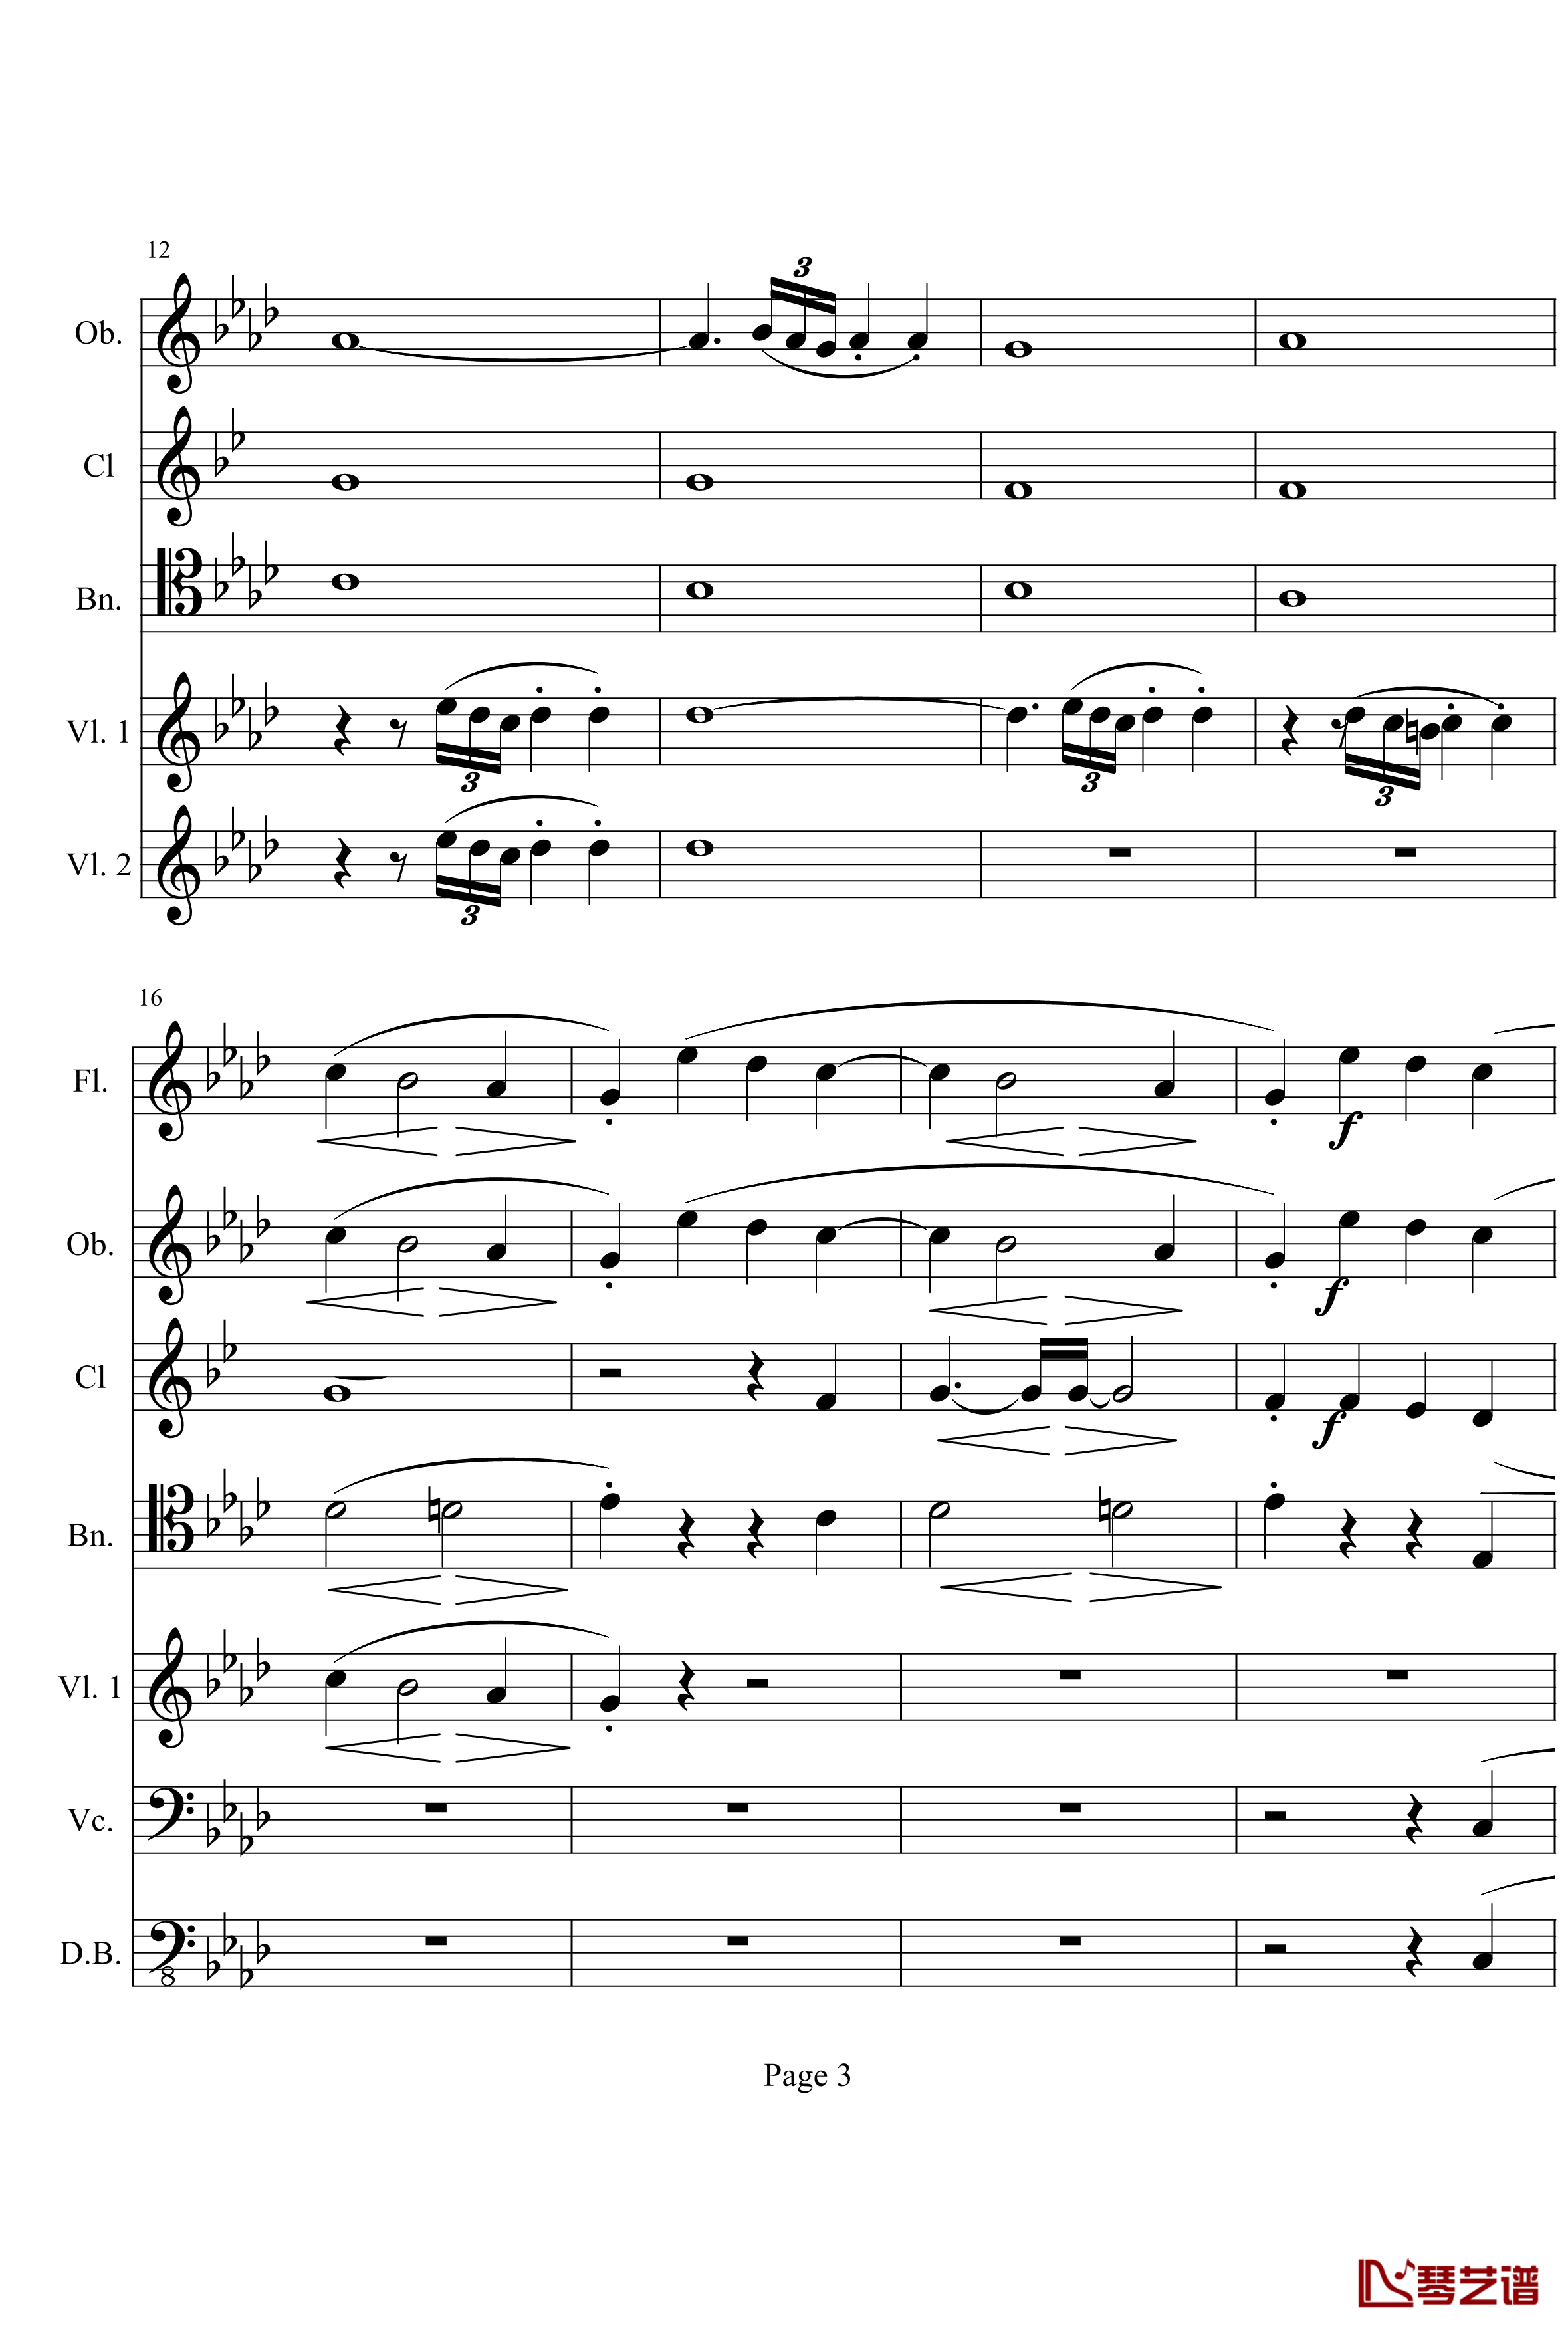 奏鸣曲之交响钢琴谱-第1首-Ⅰ-贝多芬-beethoven3